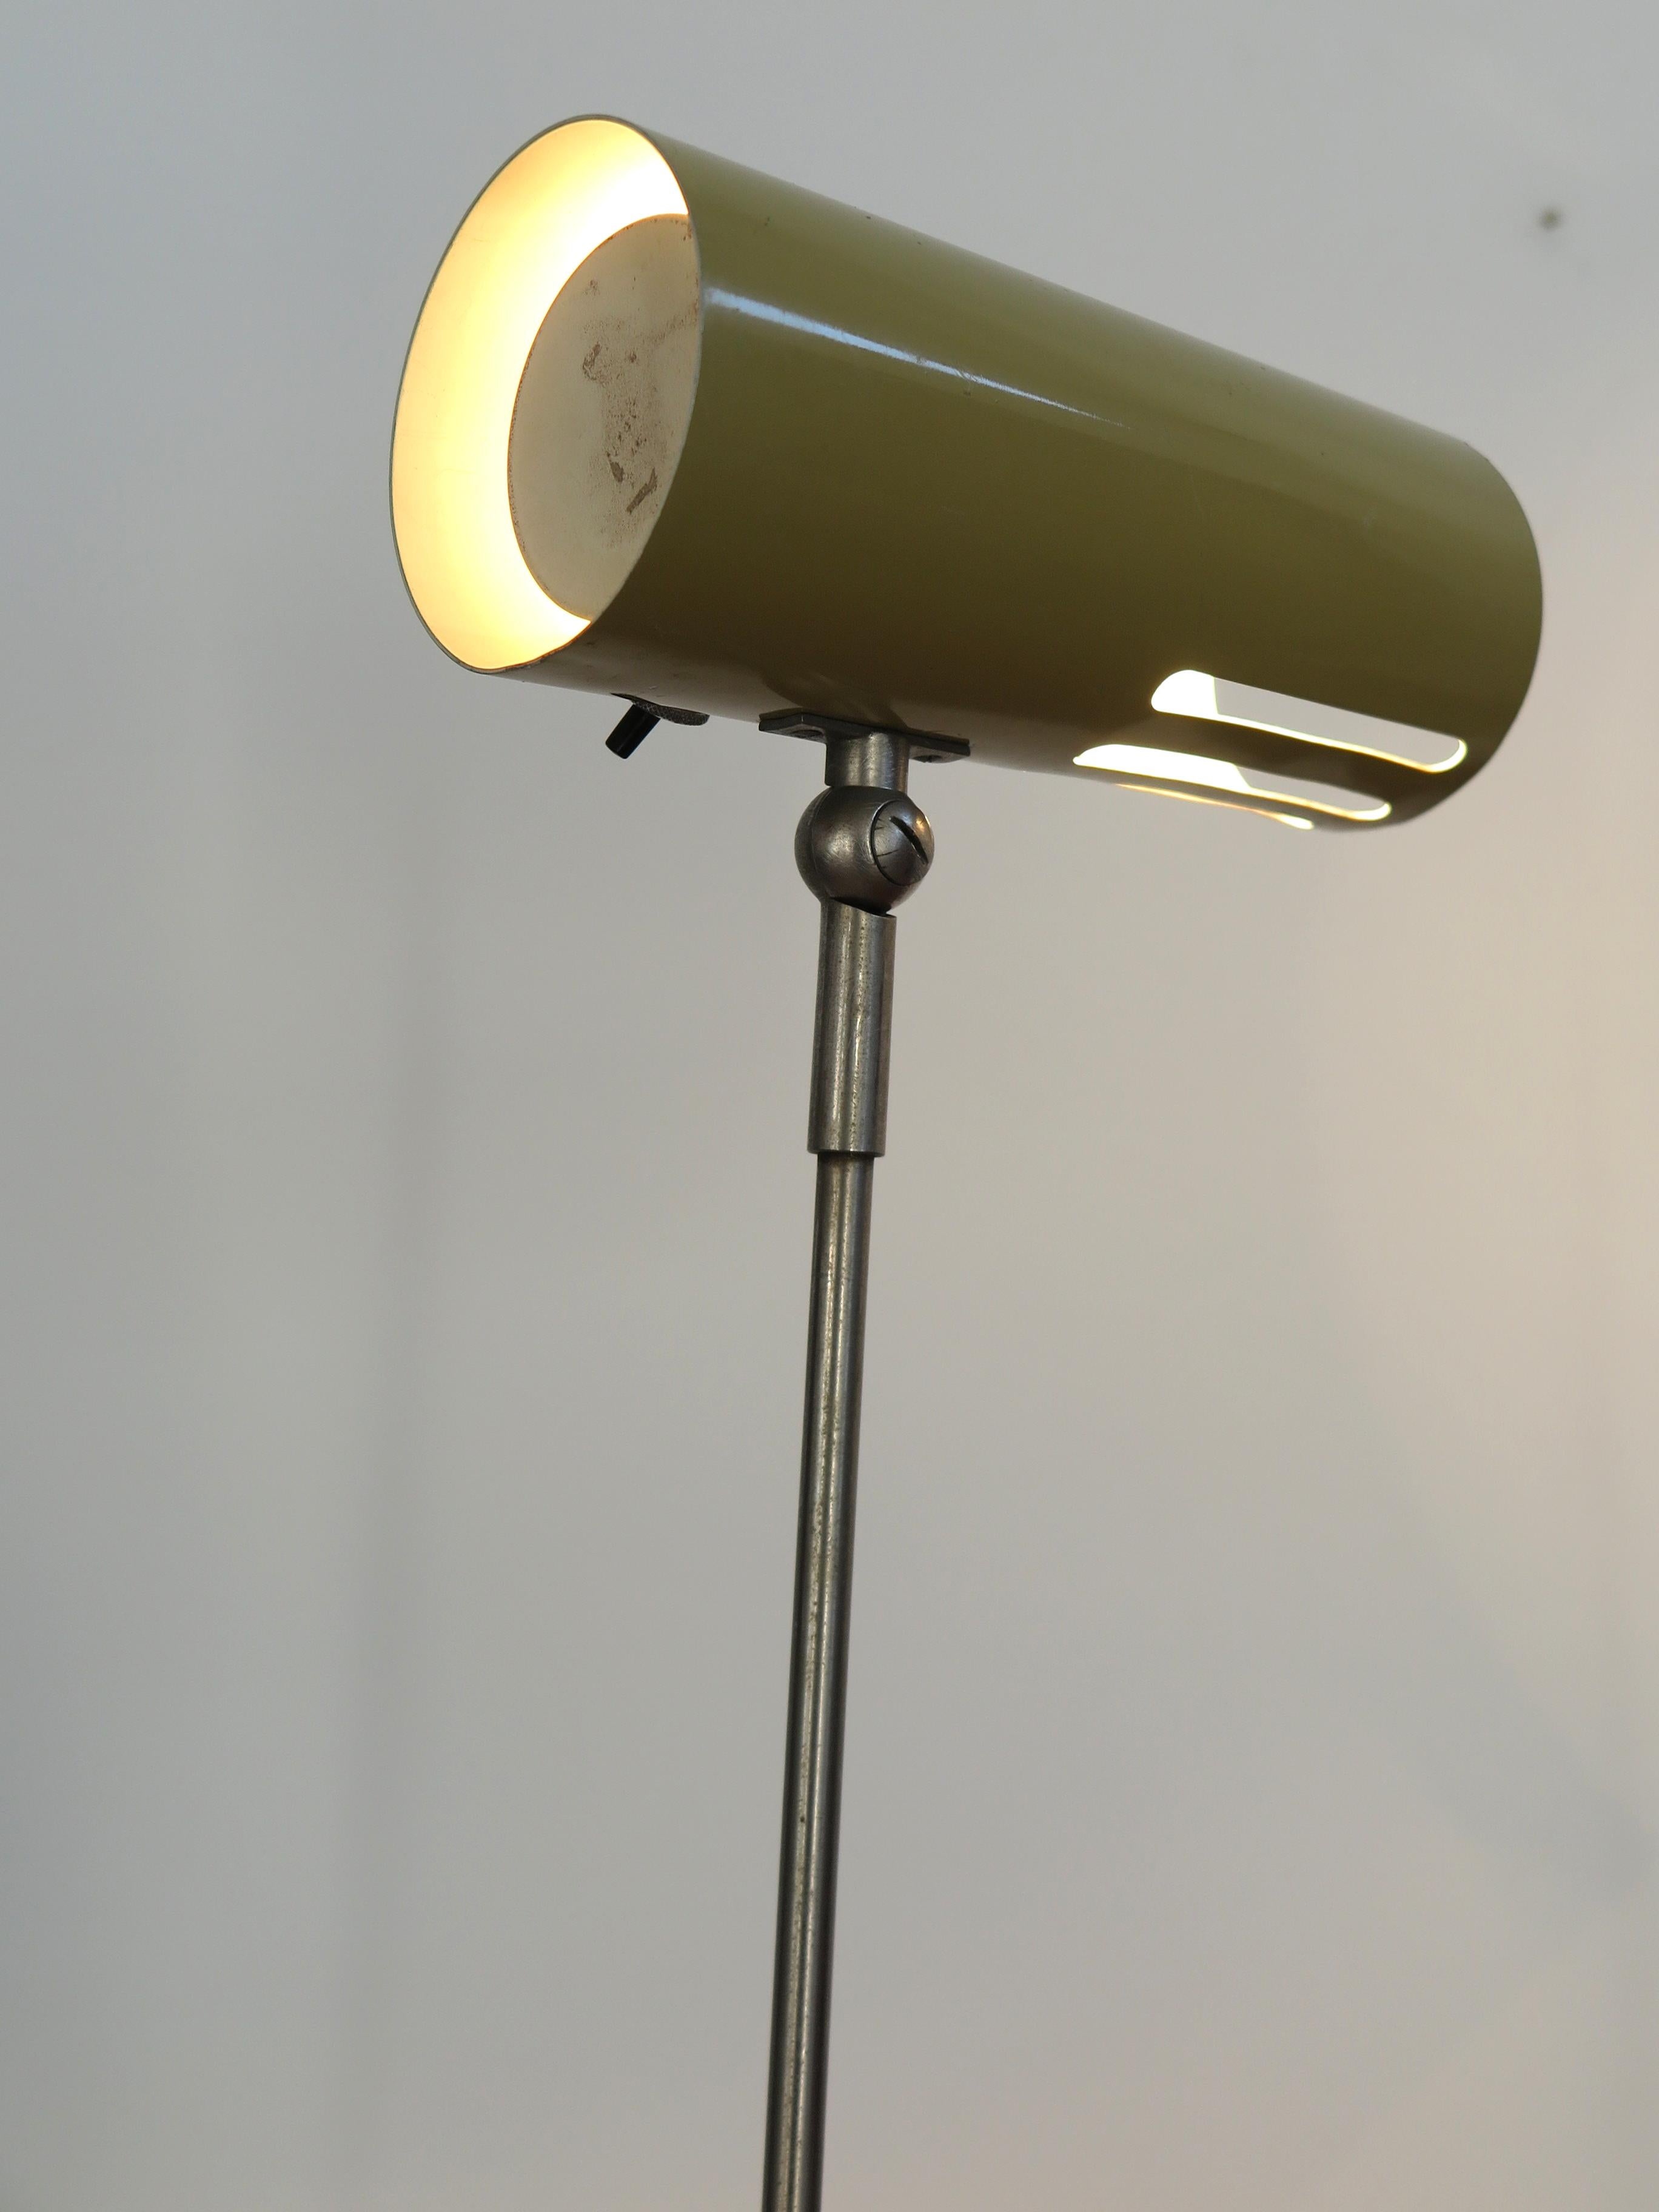 Italian Stilnovo Midcentury Modern Metal Clamp Table Lamp 1950s For Sale 4